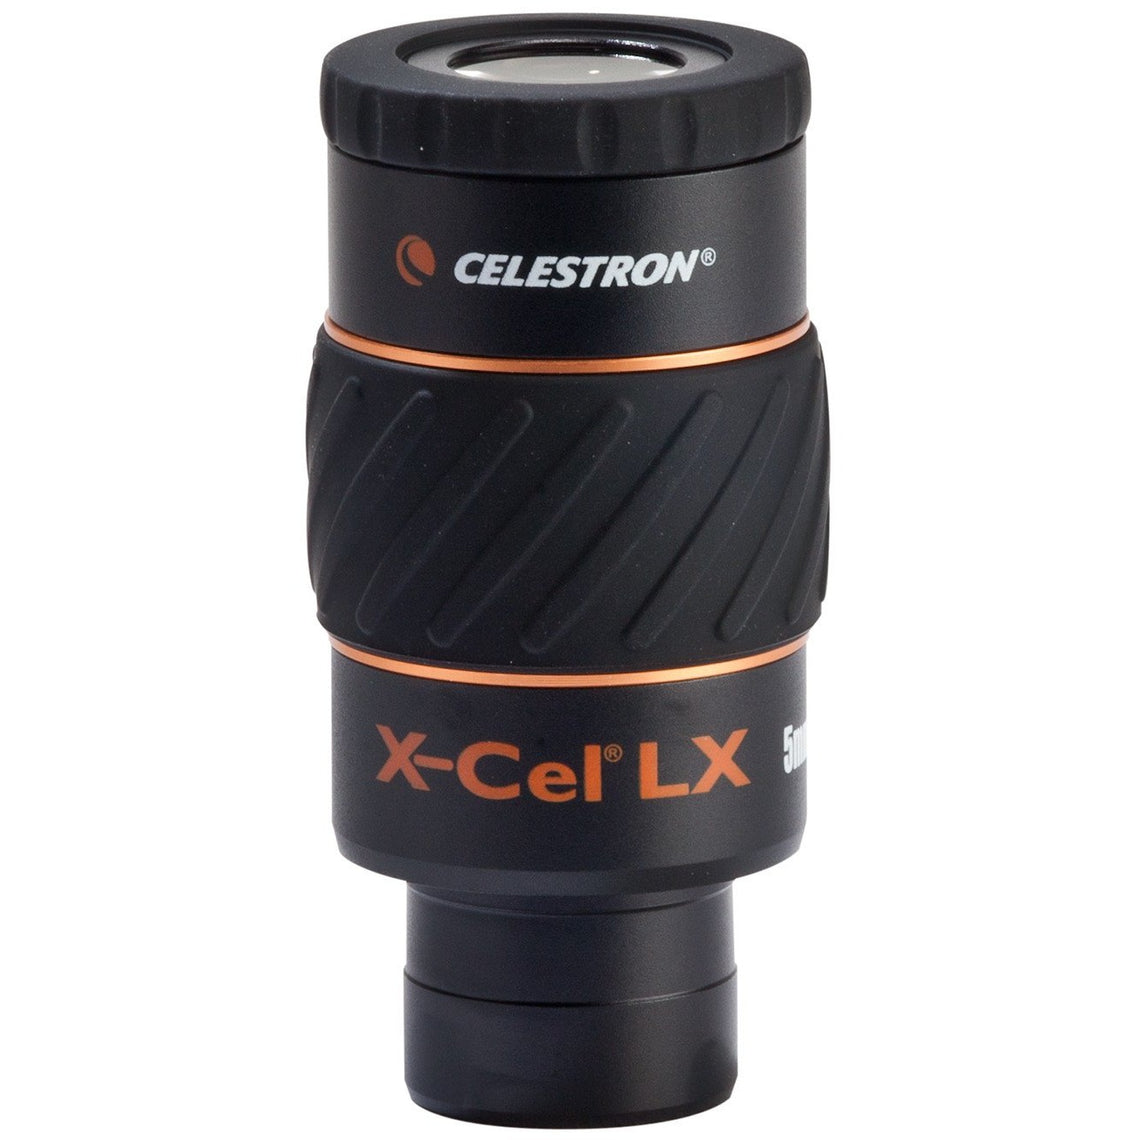 Celestron X-CEL LX Series Eyepiece - 1.25 Inch